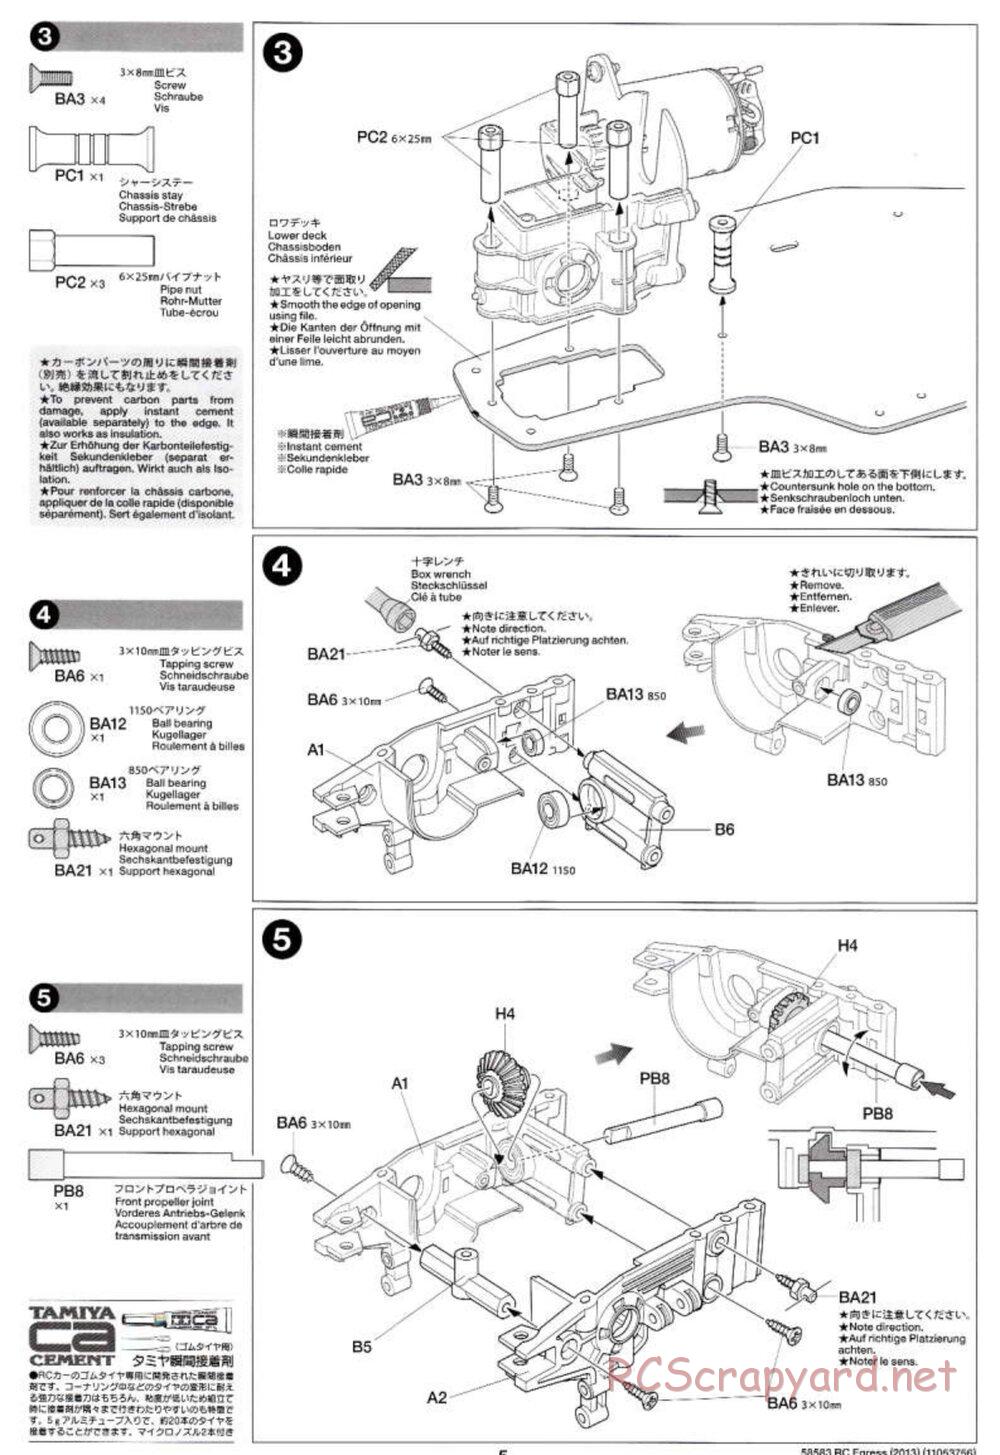 Tamiya - Egress 2013 - AV Chassis - Manual - Page 5